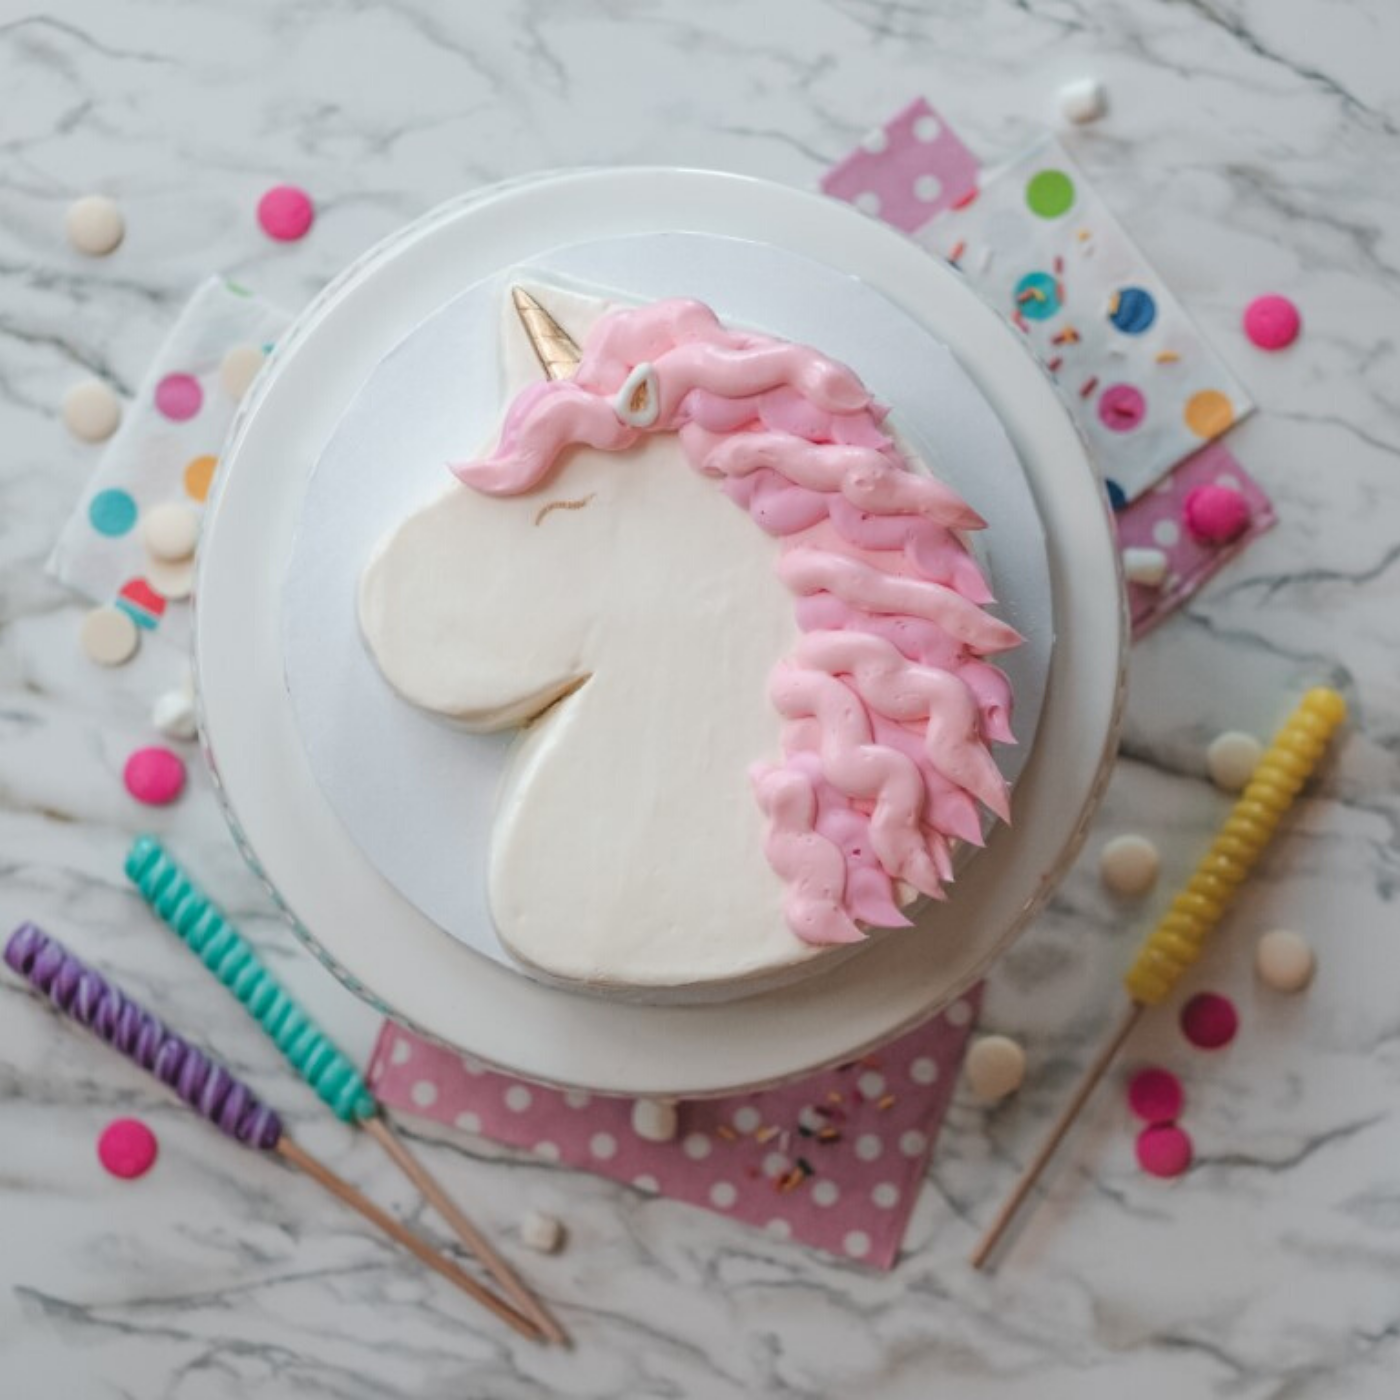 Lifestyle image of large unicorn cake